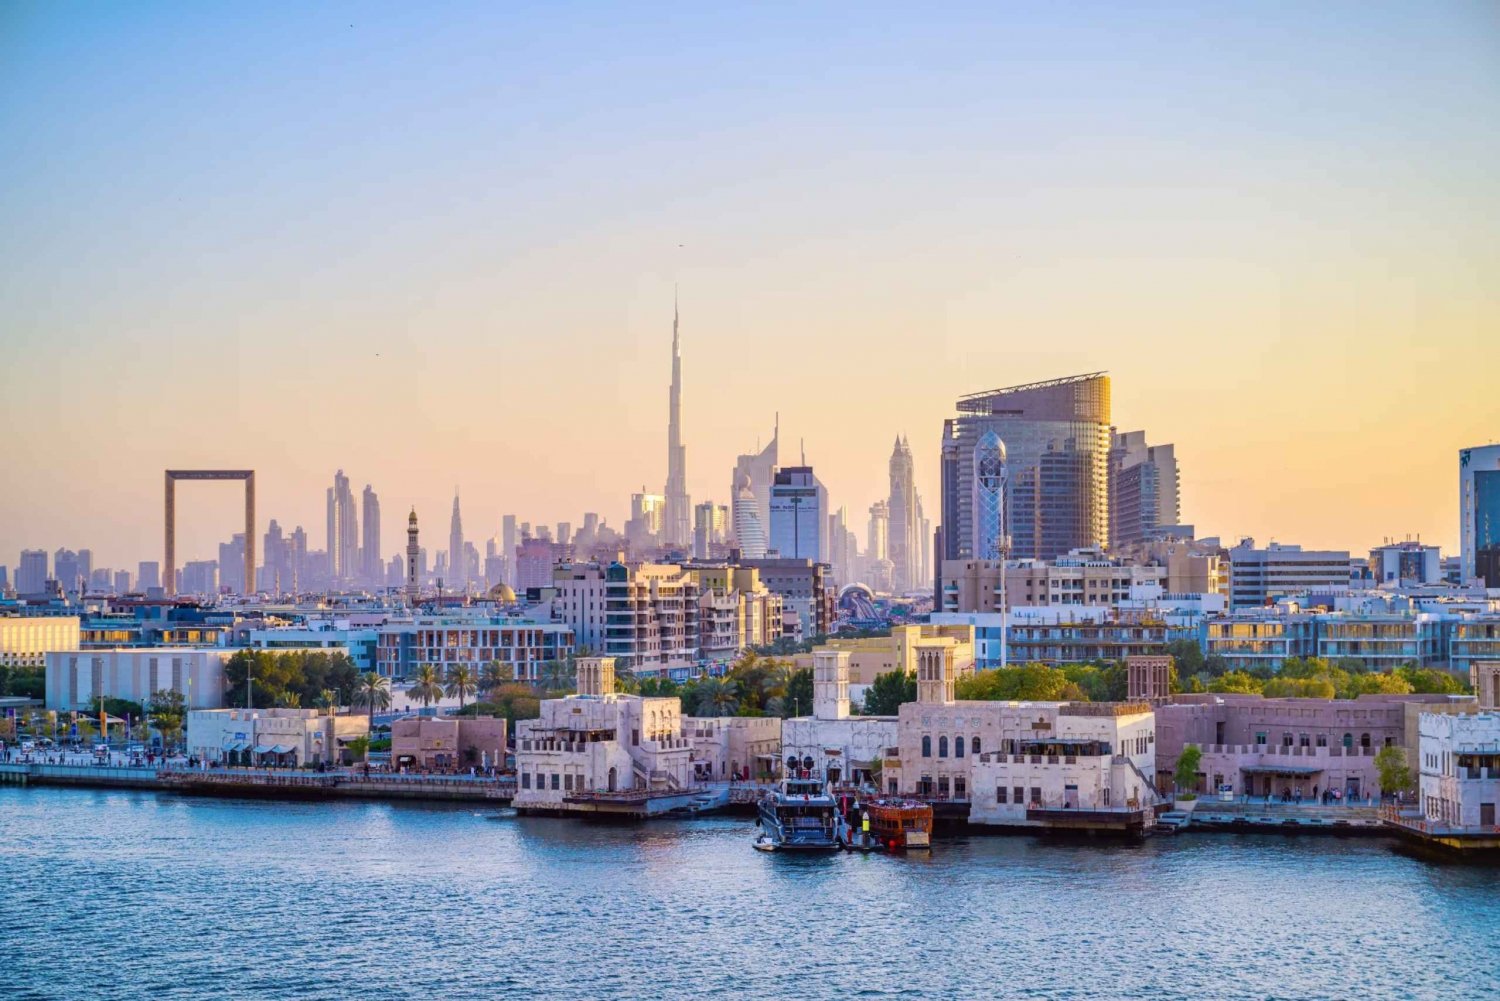 El Viejo Dubai: Tour a pie con paseo en barco, zocos y museos